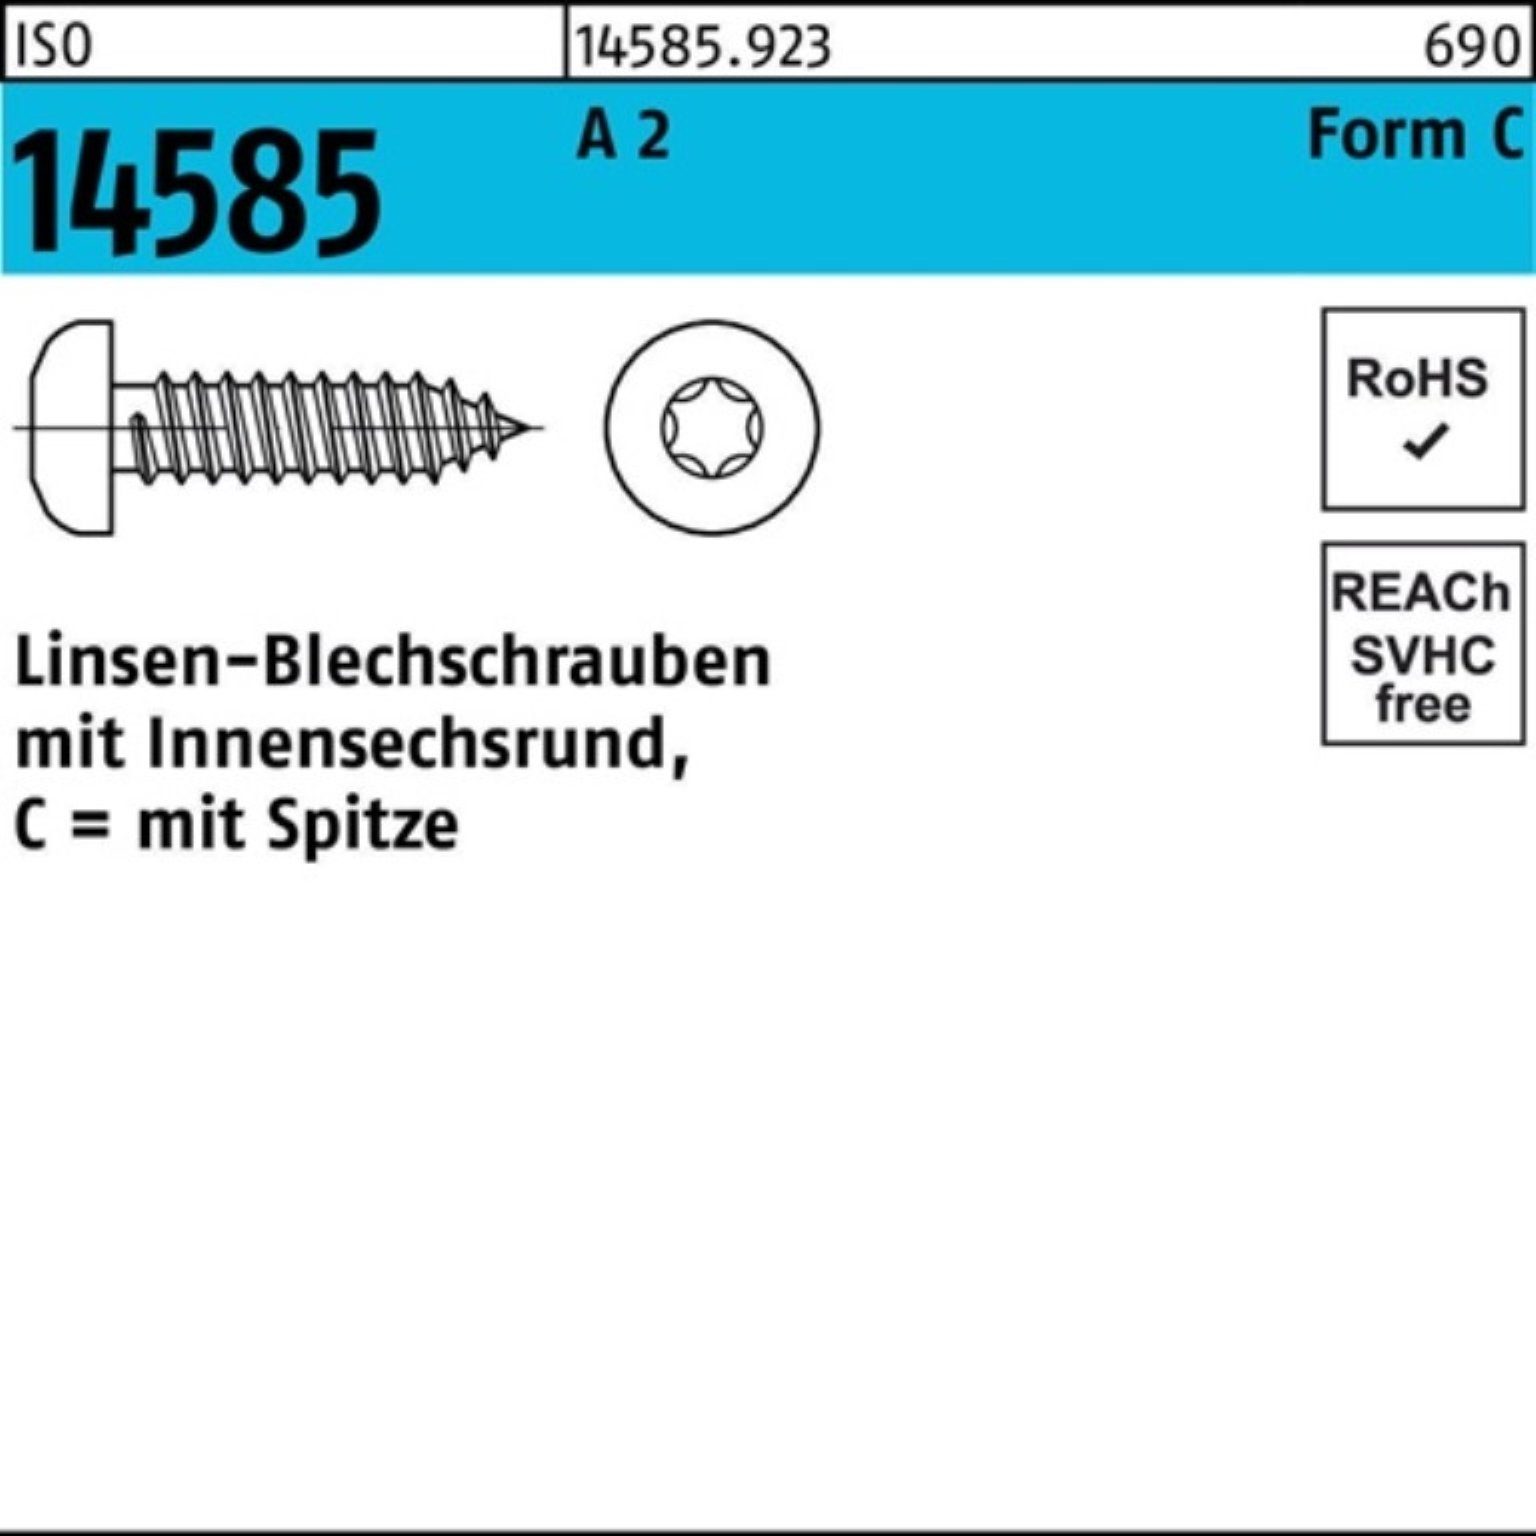 1000 16 T15 ISO Reyher Blechschraube Pack 3,9x Linsenblechschraube ISR A 14585 2 1000er -C